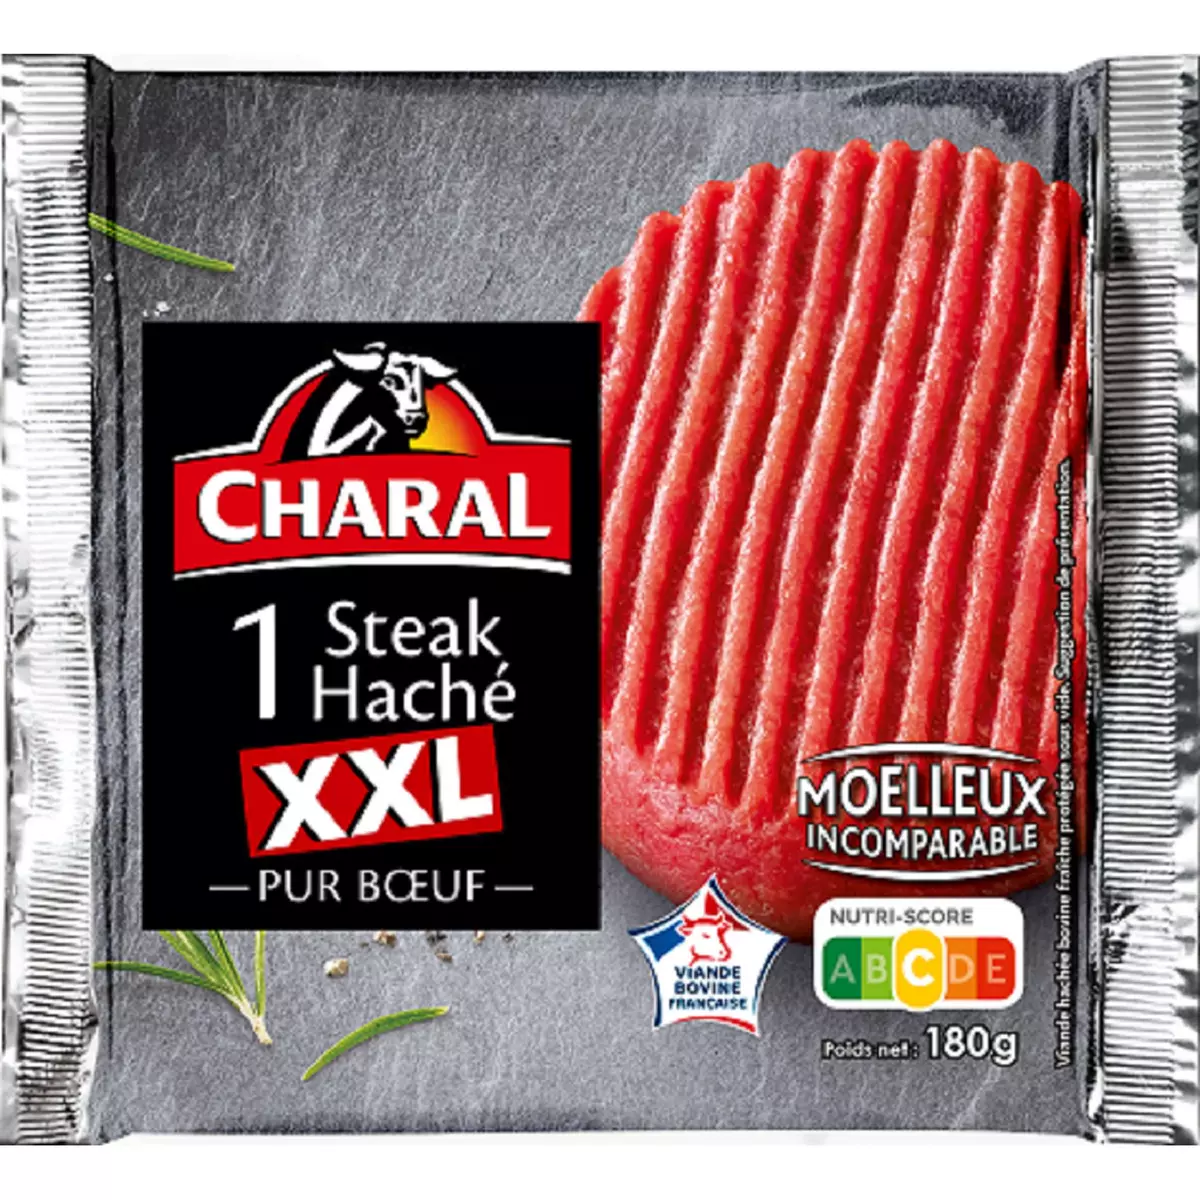 CHARAL Steak Haché XXL Pur Bœuf 180g